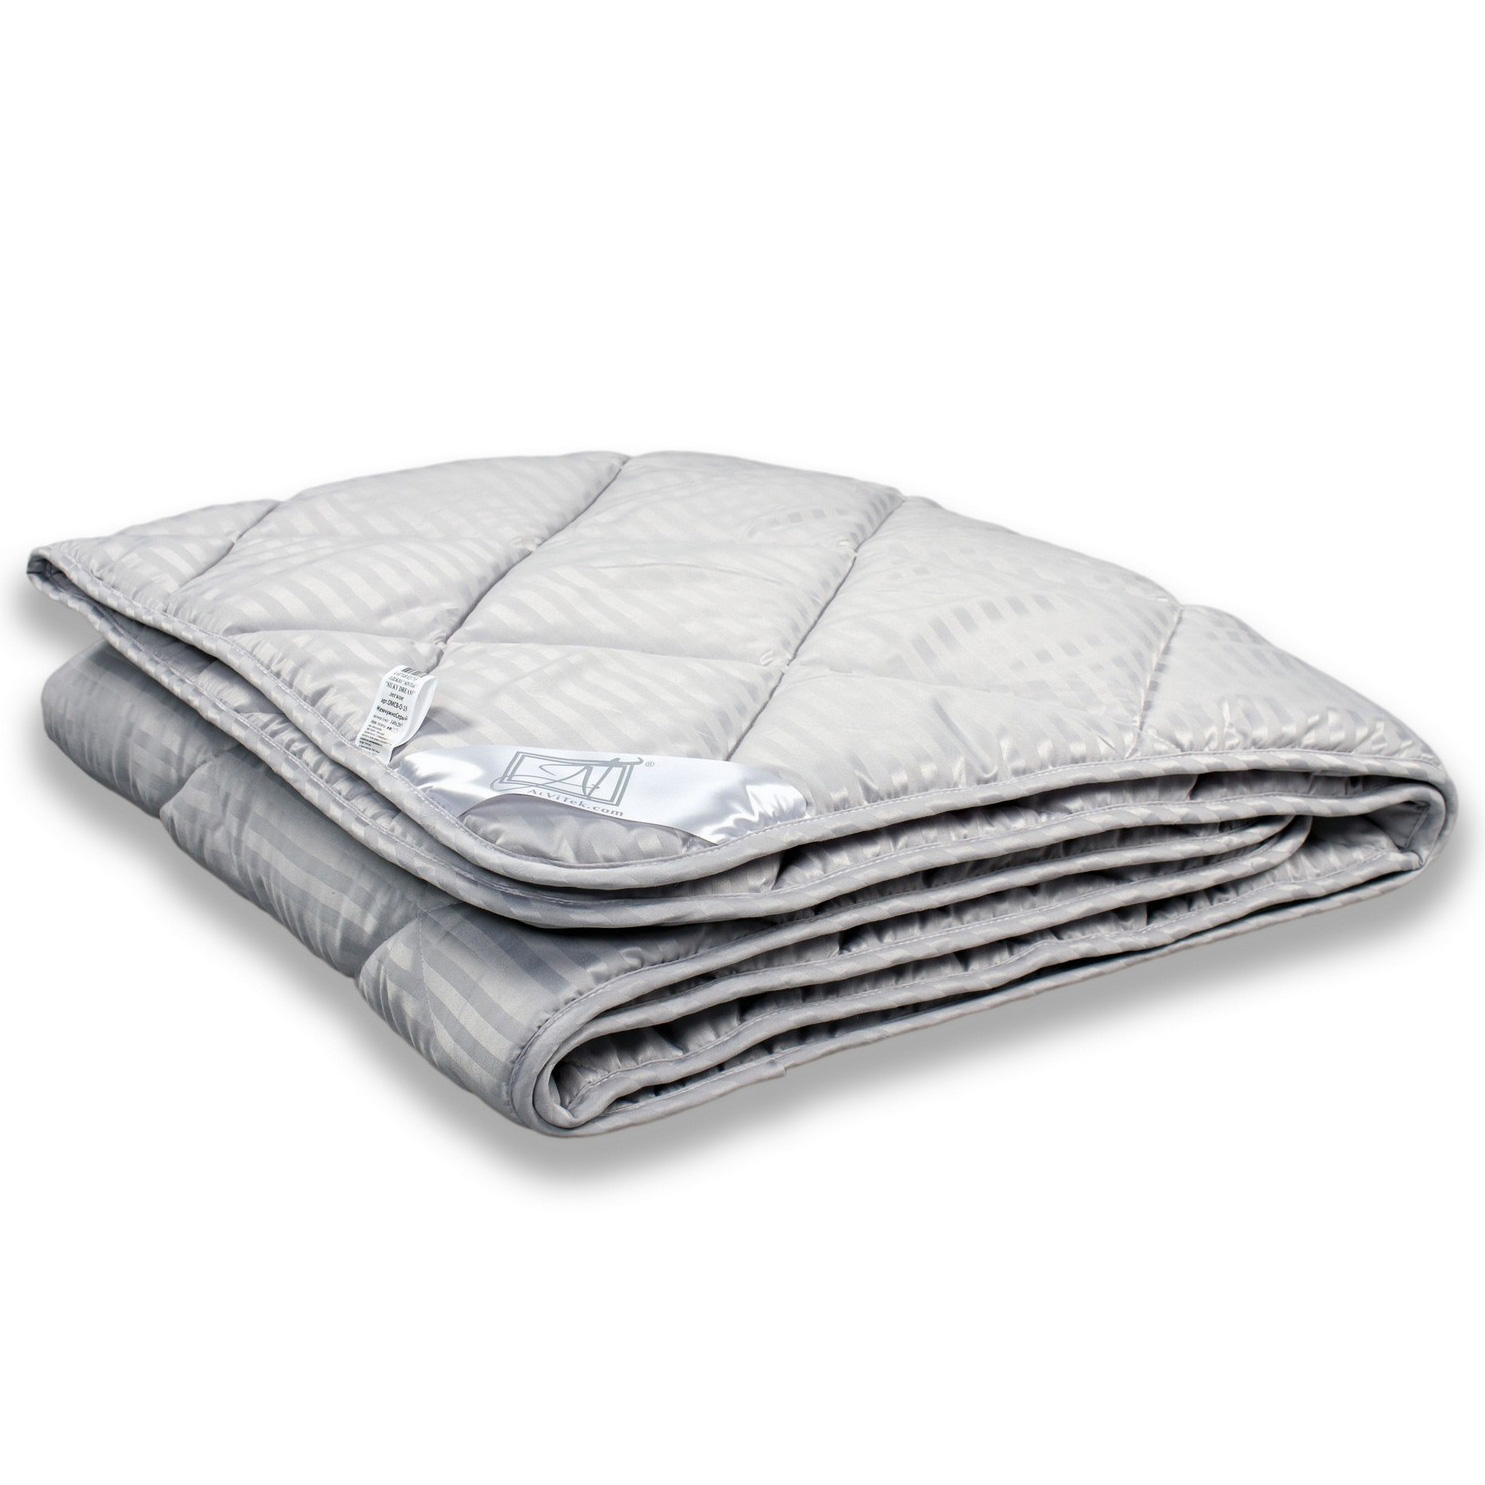 Одеяло Silky dream (200х220 см), размер 200х220 см avt938301 Одеяло Silky dream (200х220 см) - фото 1